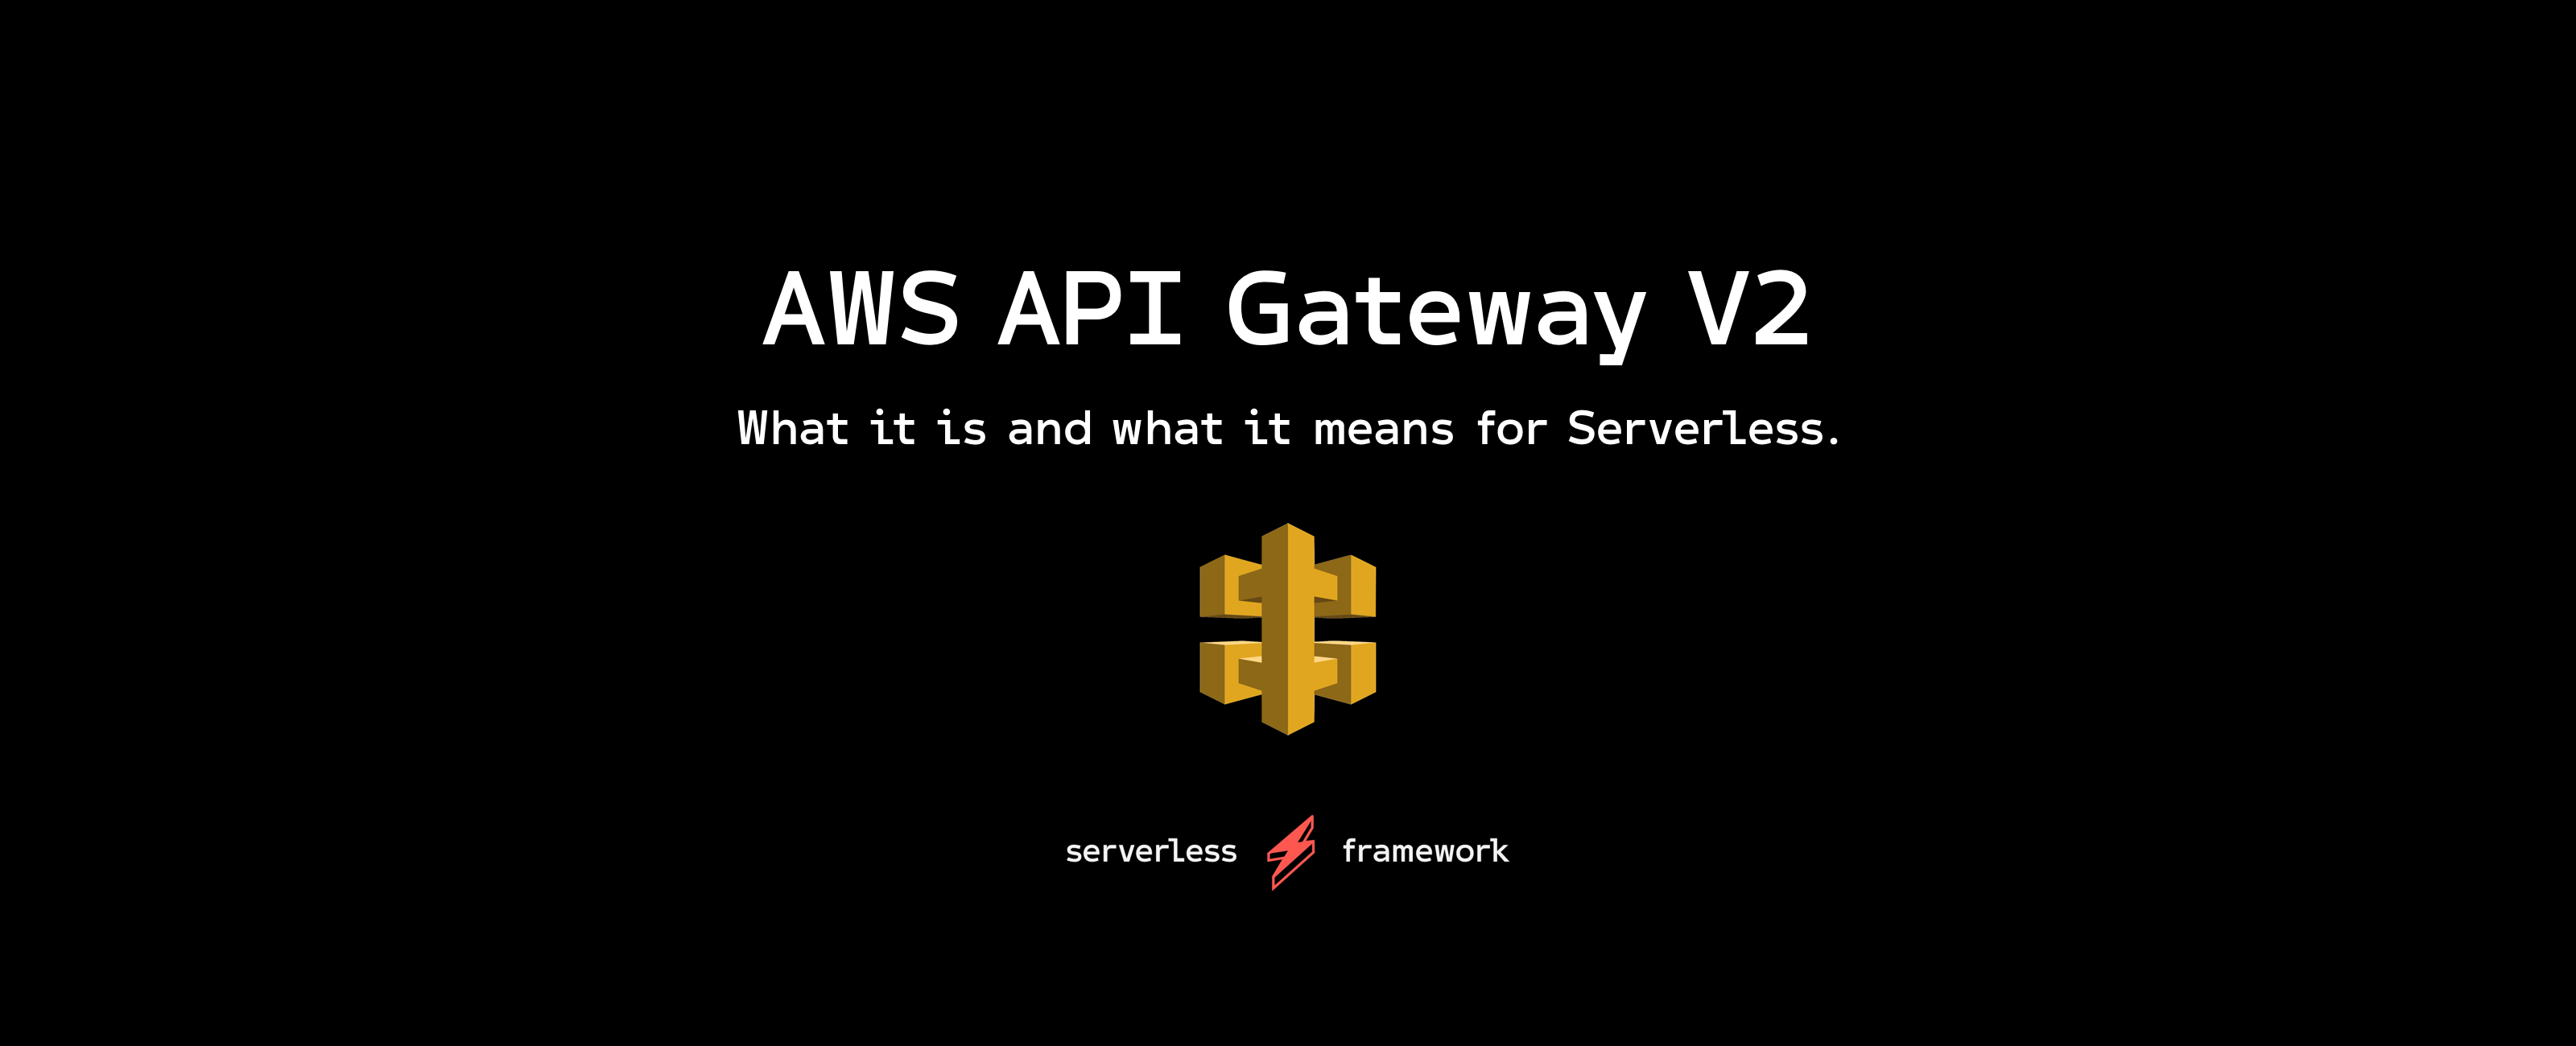 New AWS API Gateway v2 for HTTP APIs